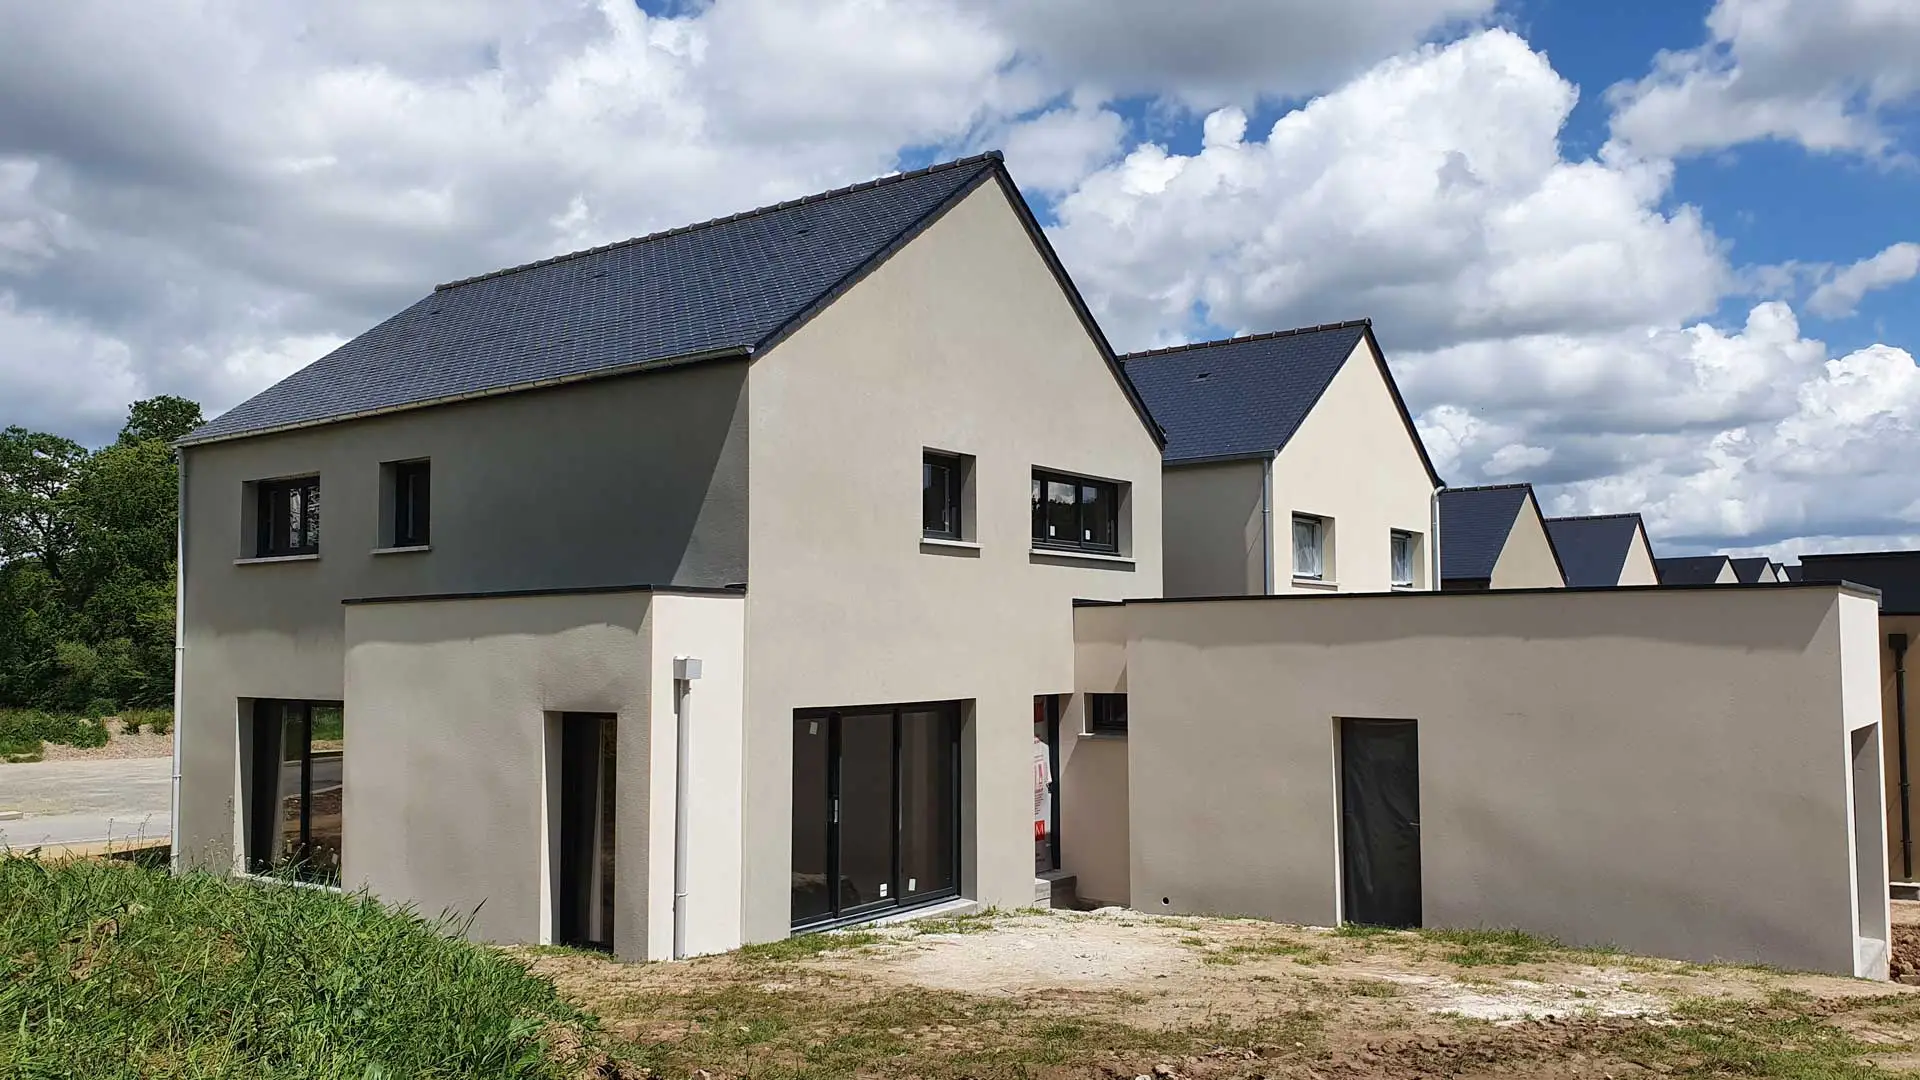 Constructeur pour votre maison individuelle sur Rennes, sur l'Ille et Vilaine et sur les Côtes d'Armor